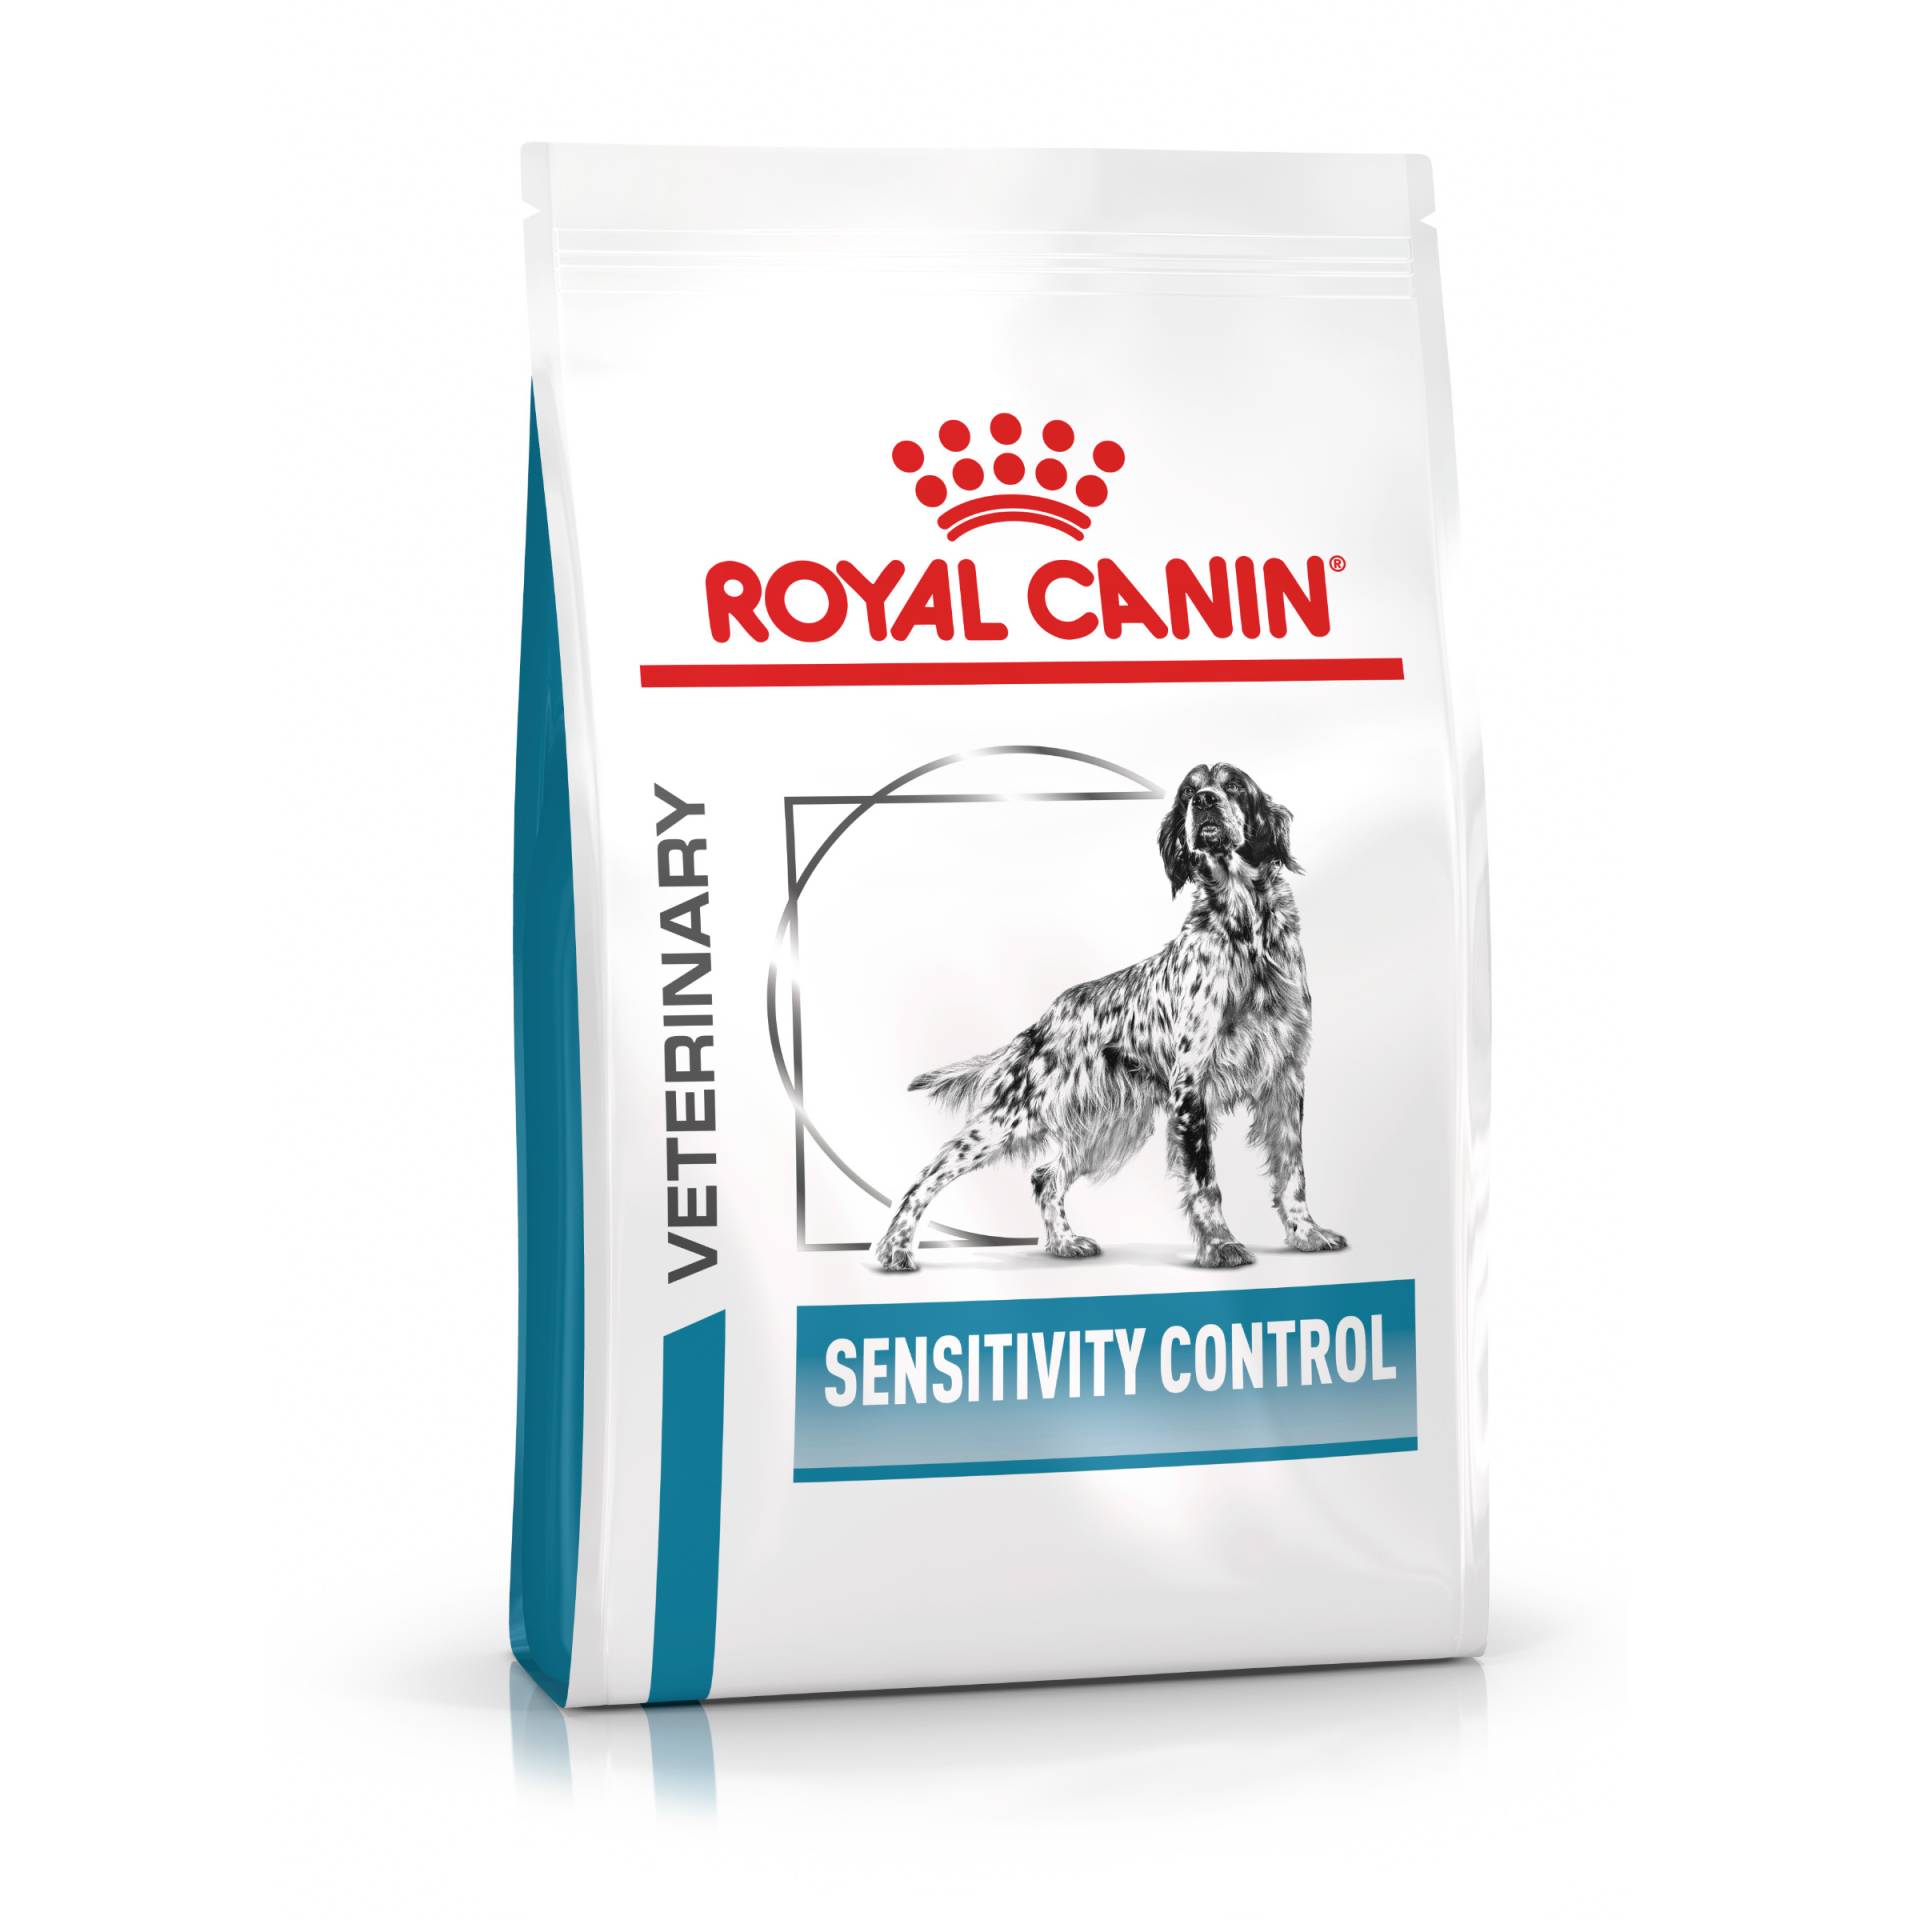 Royal Canin Veterinary Canine Sensitivity Control - 7 kg von Royal Canin Veterinary Diet